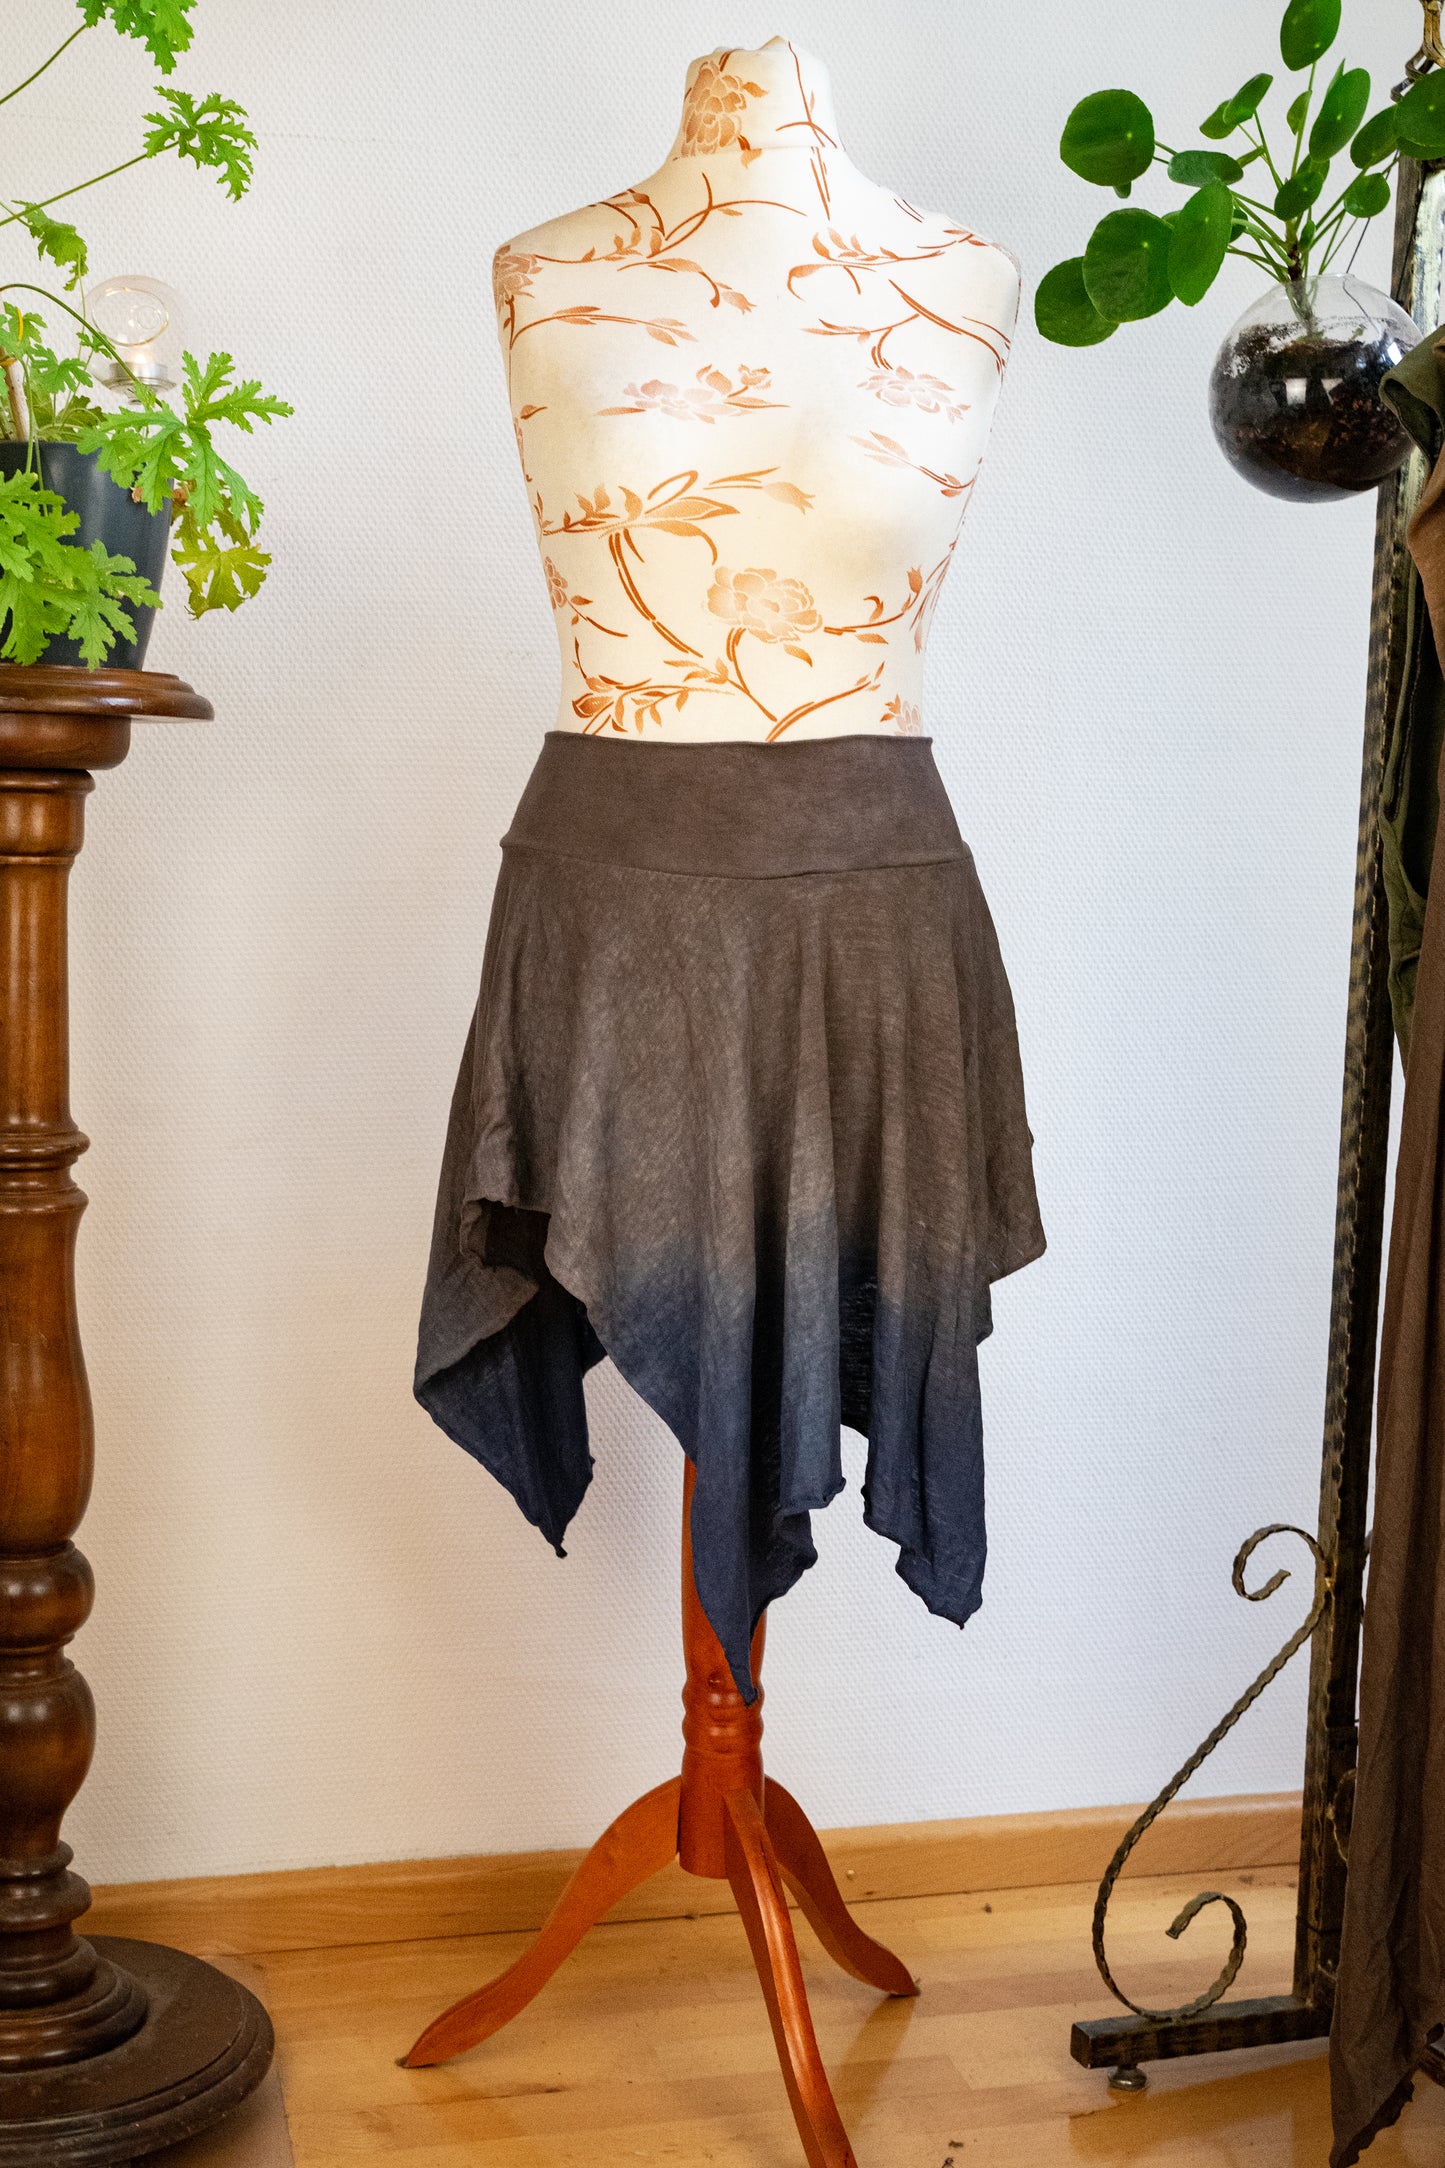 Size 34-38 - Hemp jersey skirt